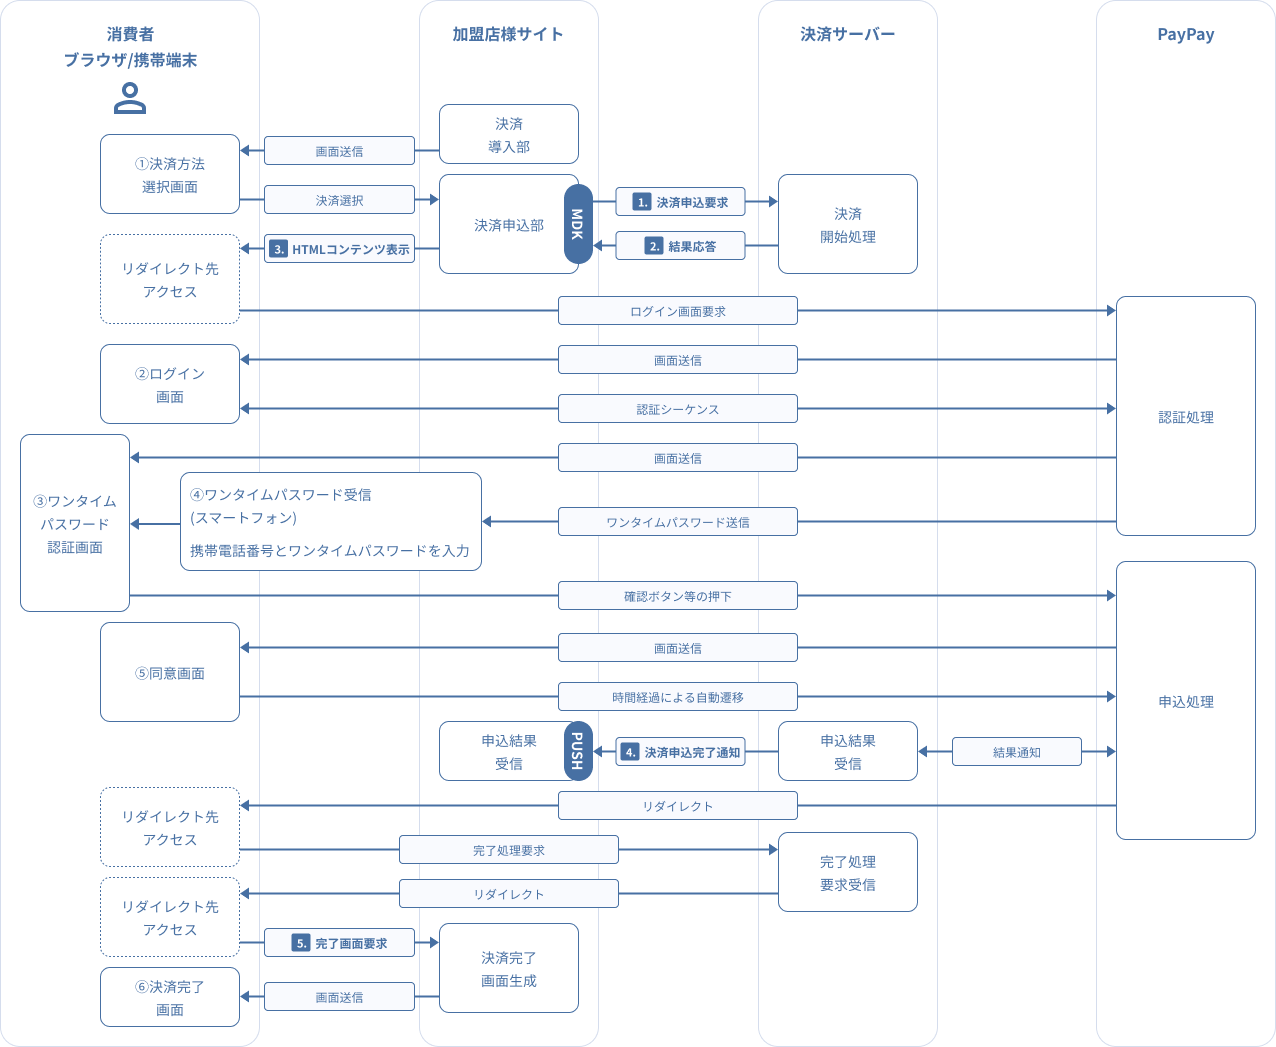 図 3-2.3 MDK利用時システム処理概要図（PayPay（オンライン決済）の随時決済申込）